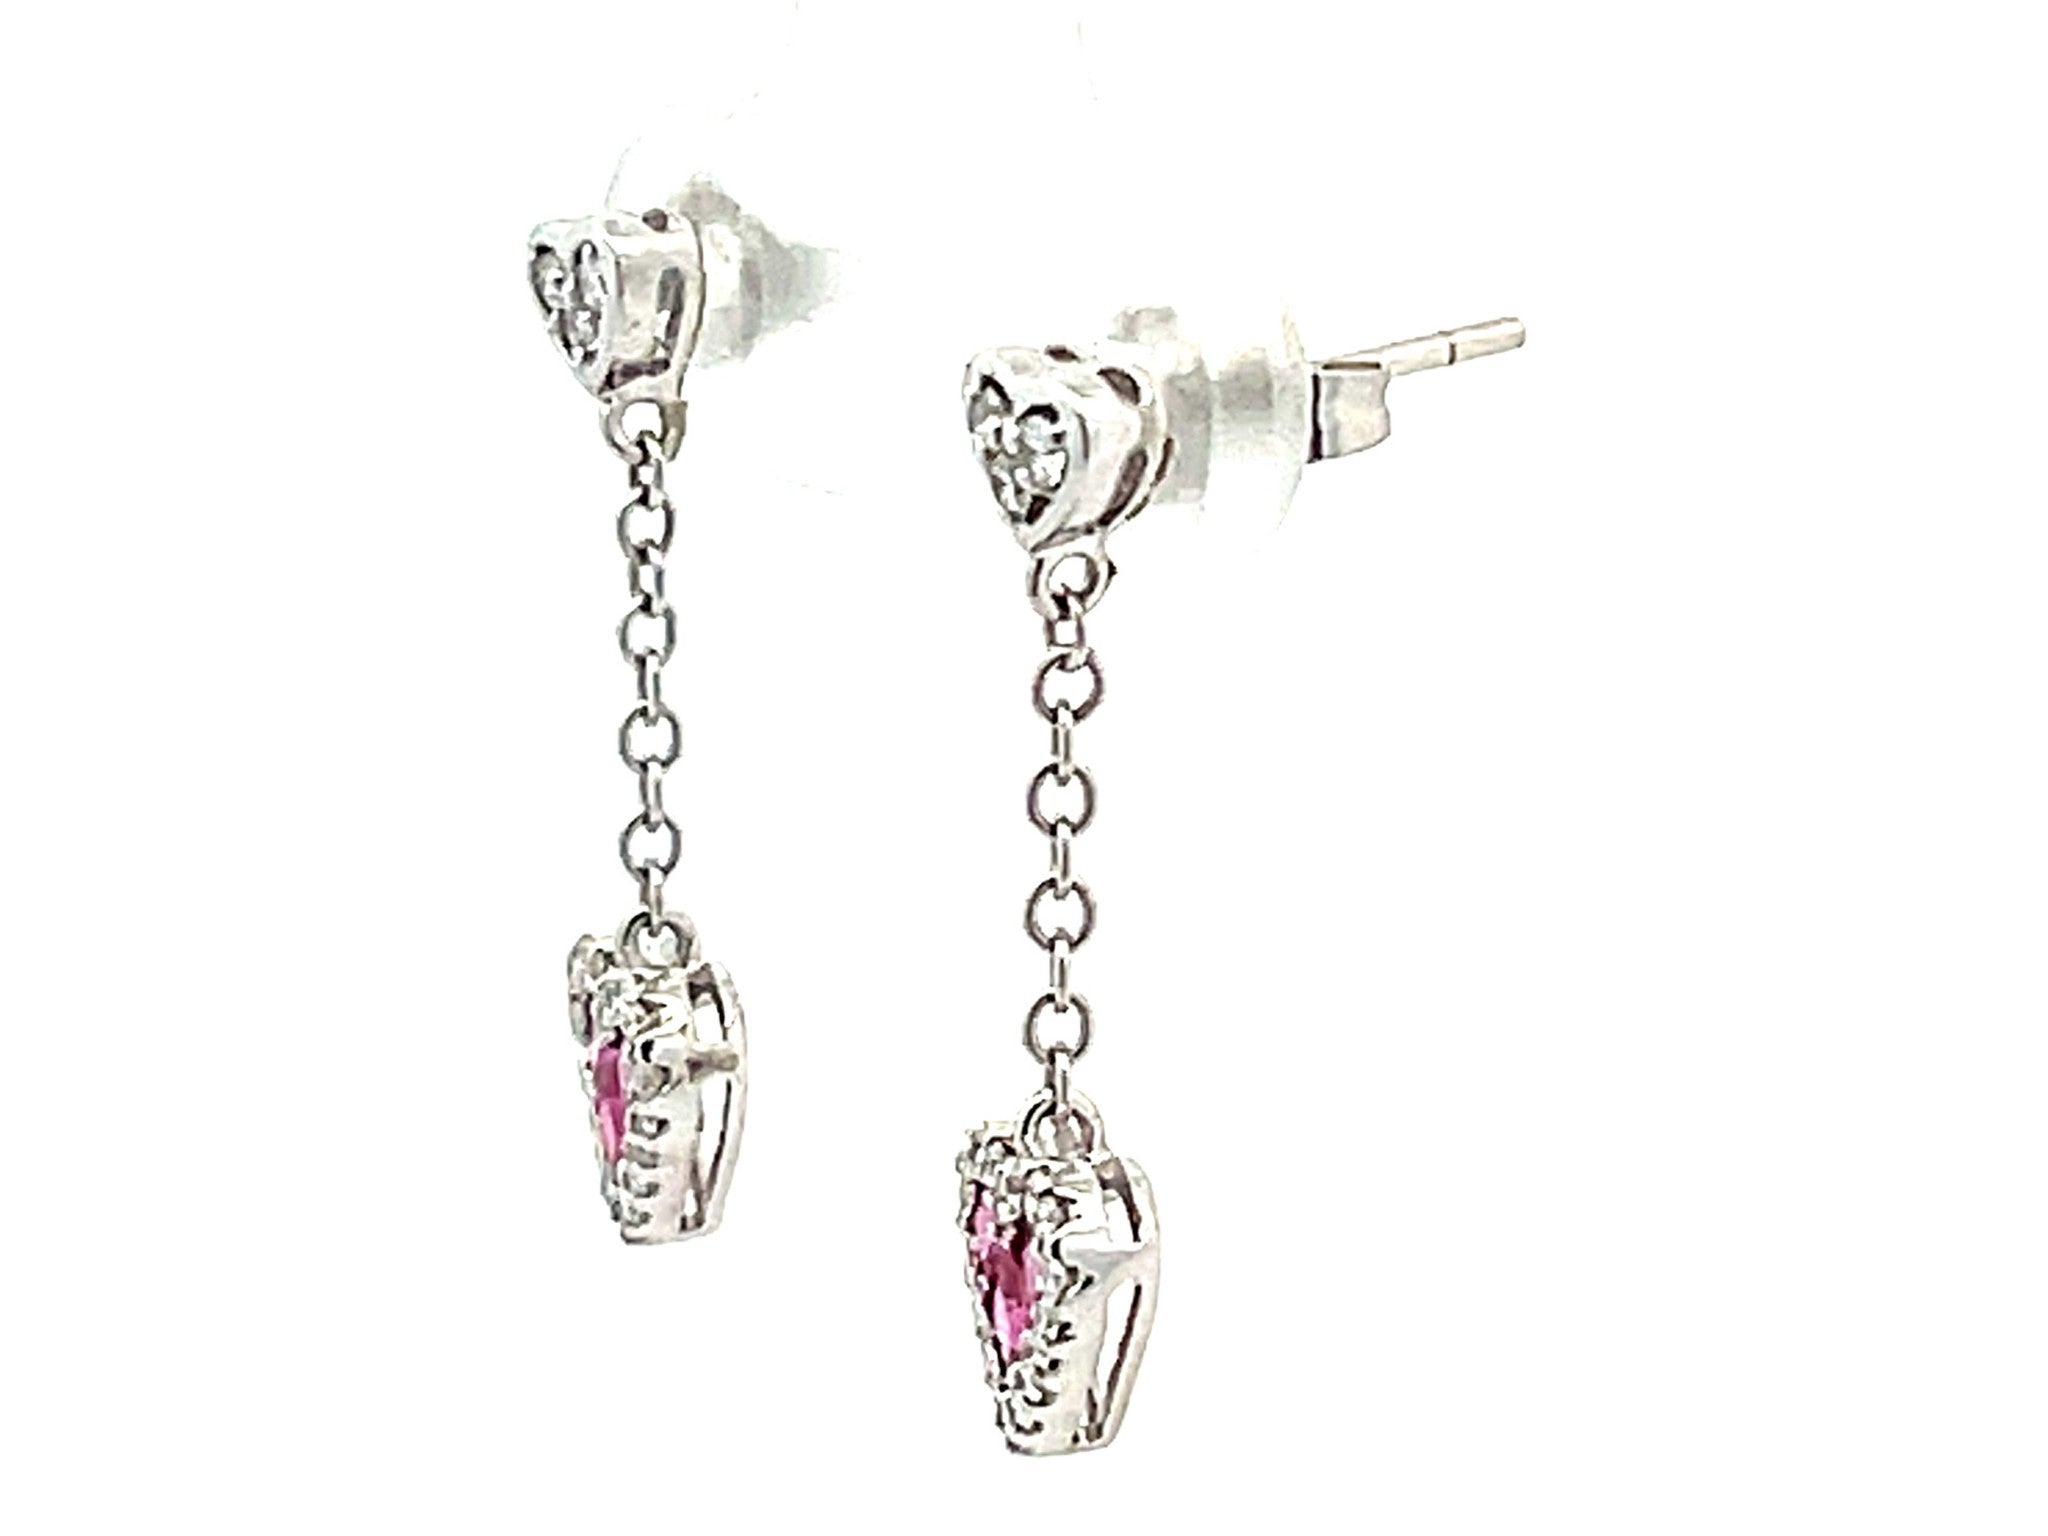 Ruby Heart Diamond Dangling Earrings in 14k White Gold